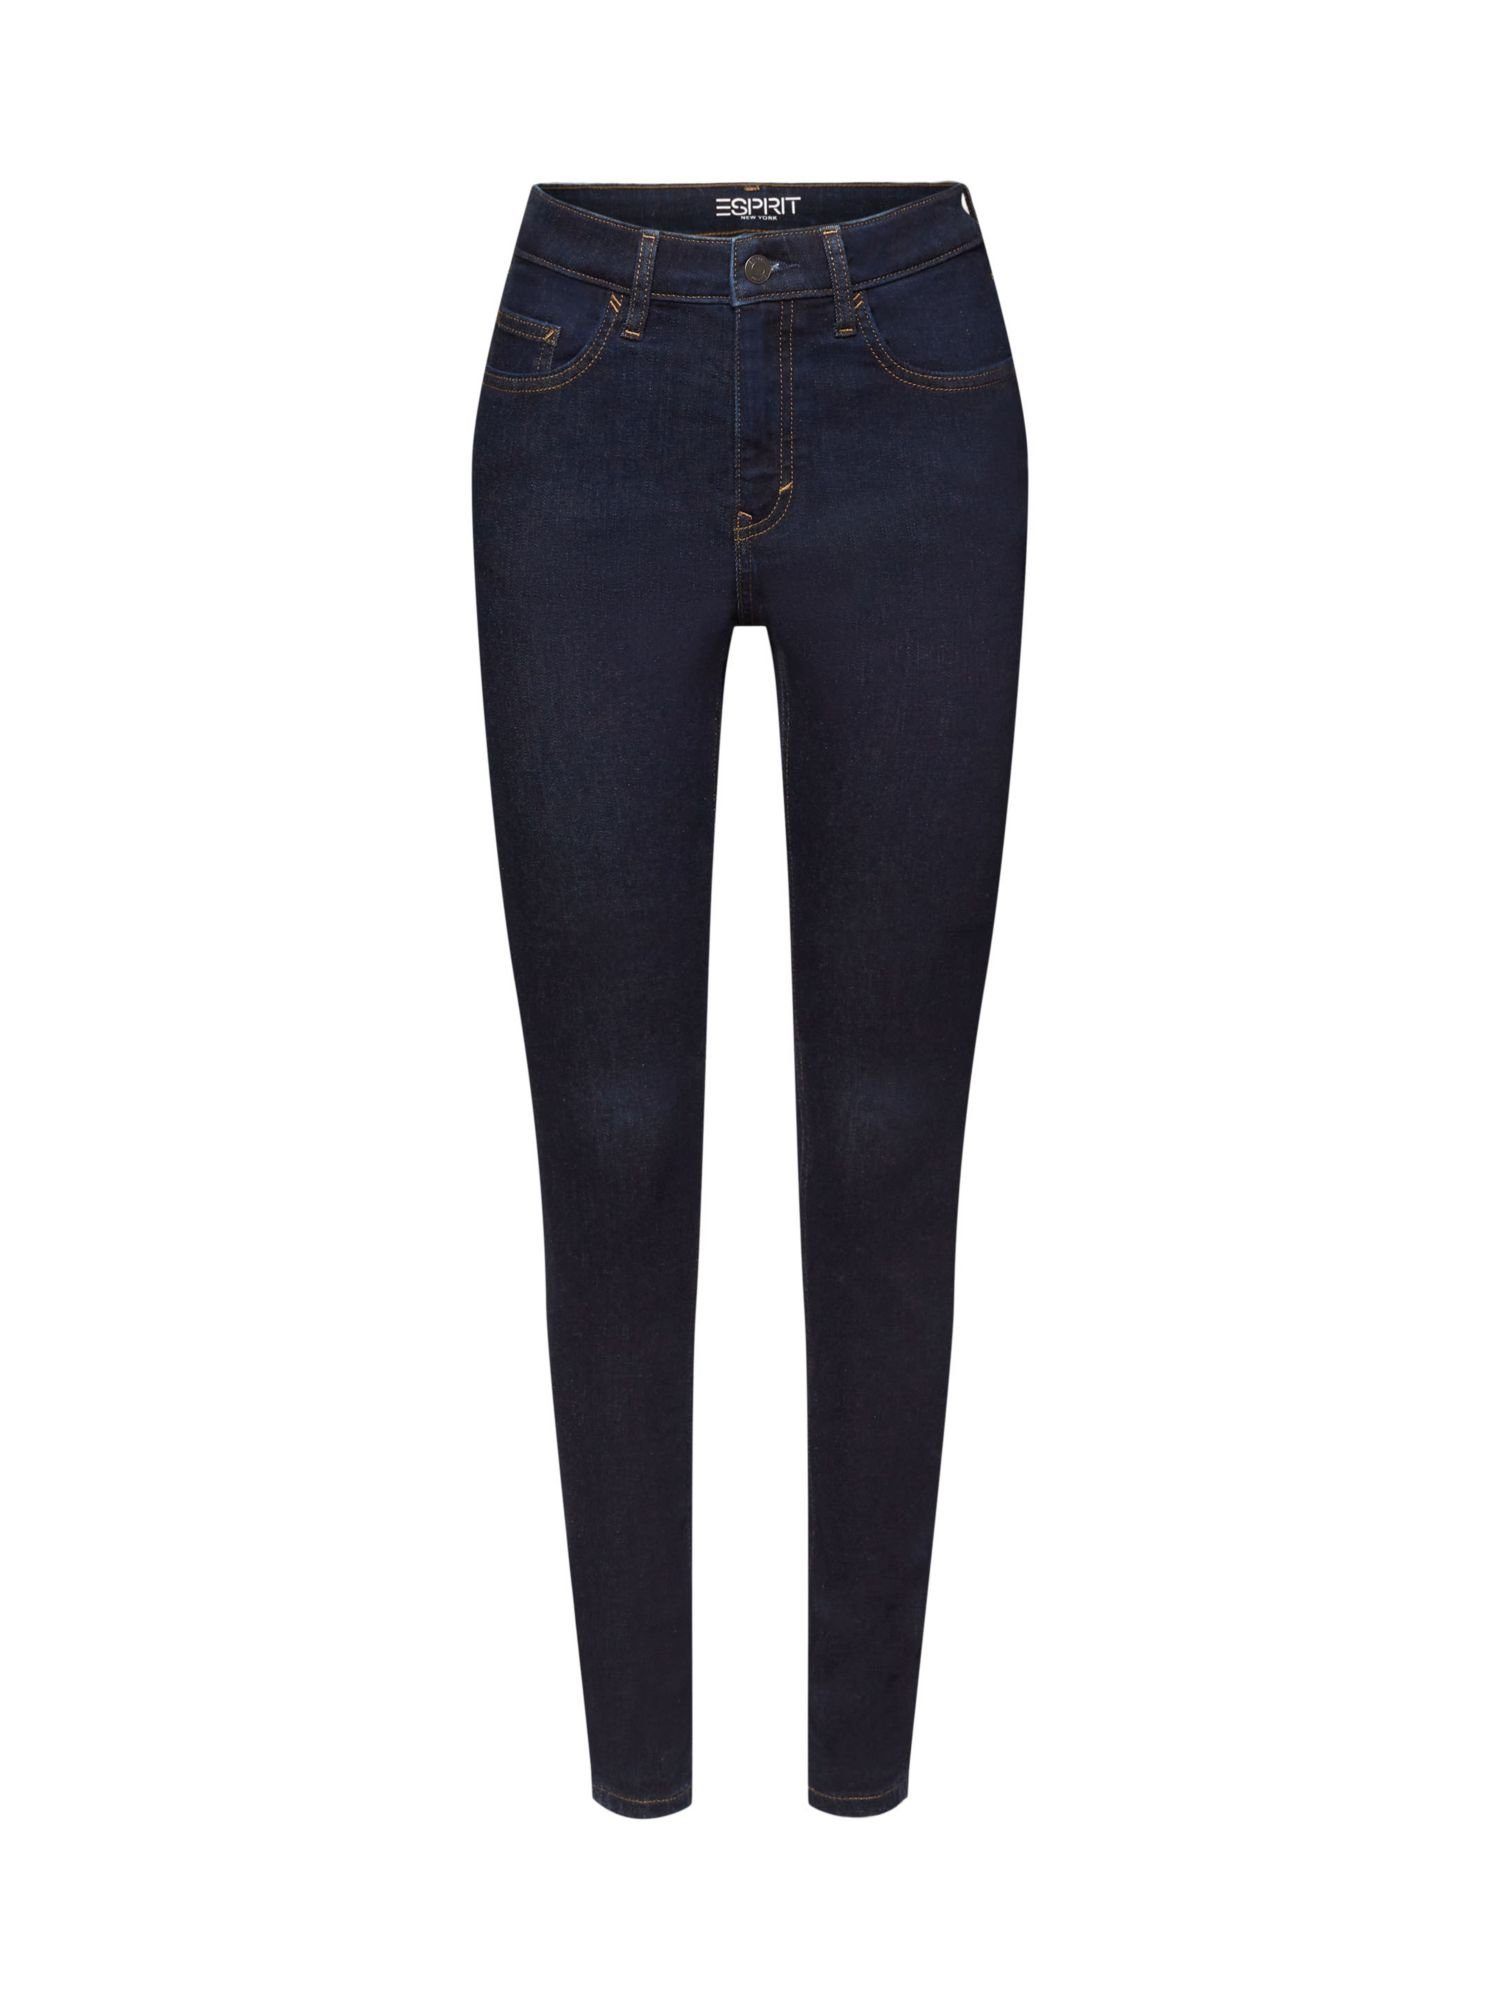 Esprit Skinny-fit-Jeans Skinny Jeans mit hohem Bund, Baumwollstretch | Skinny Jeans